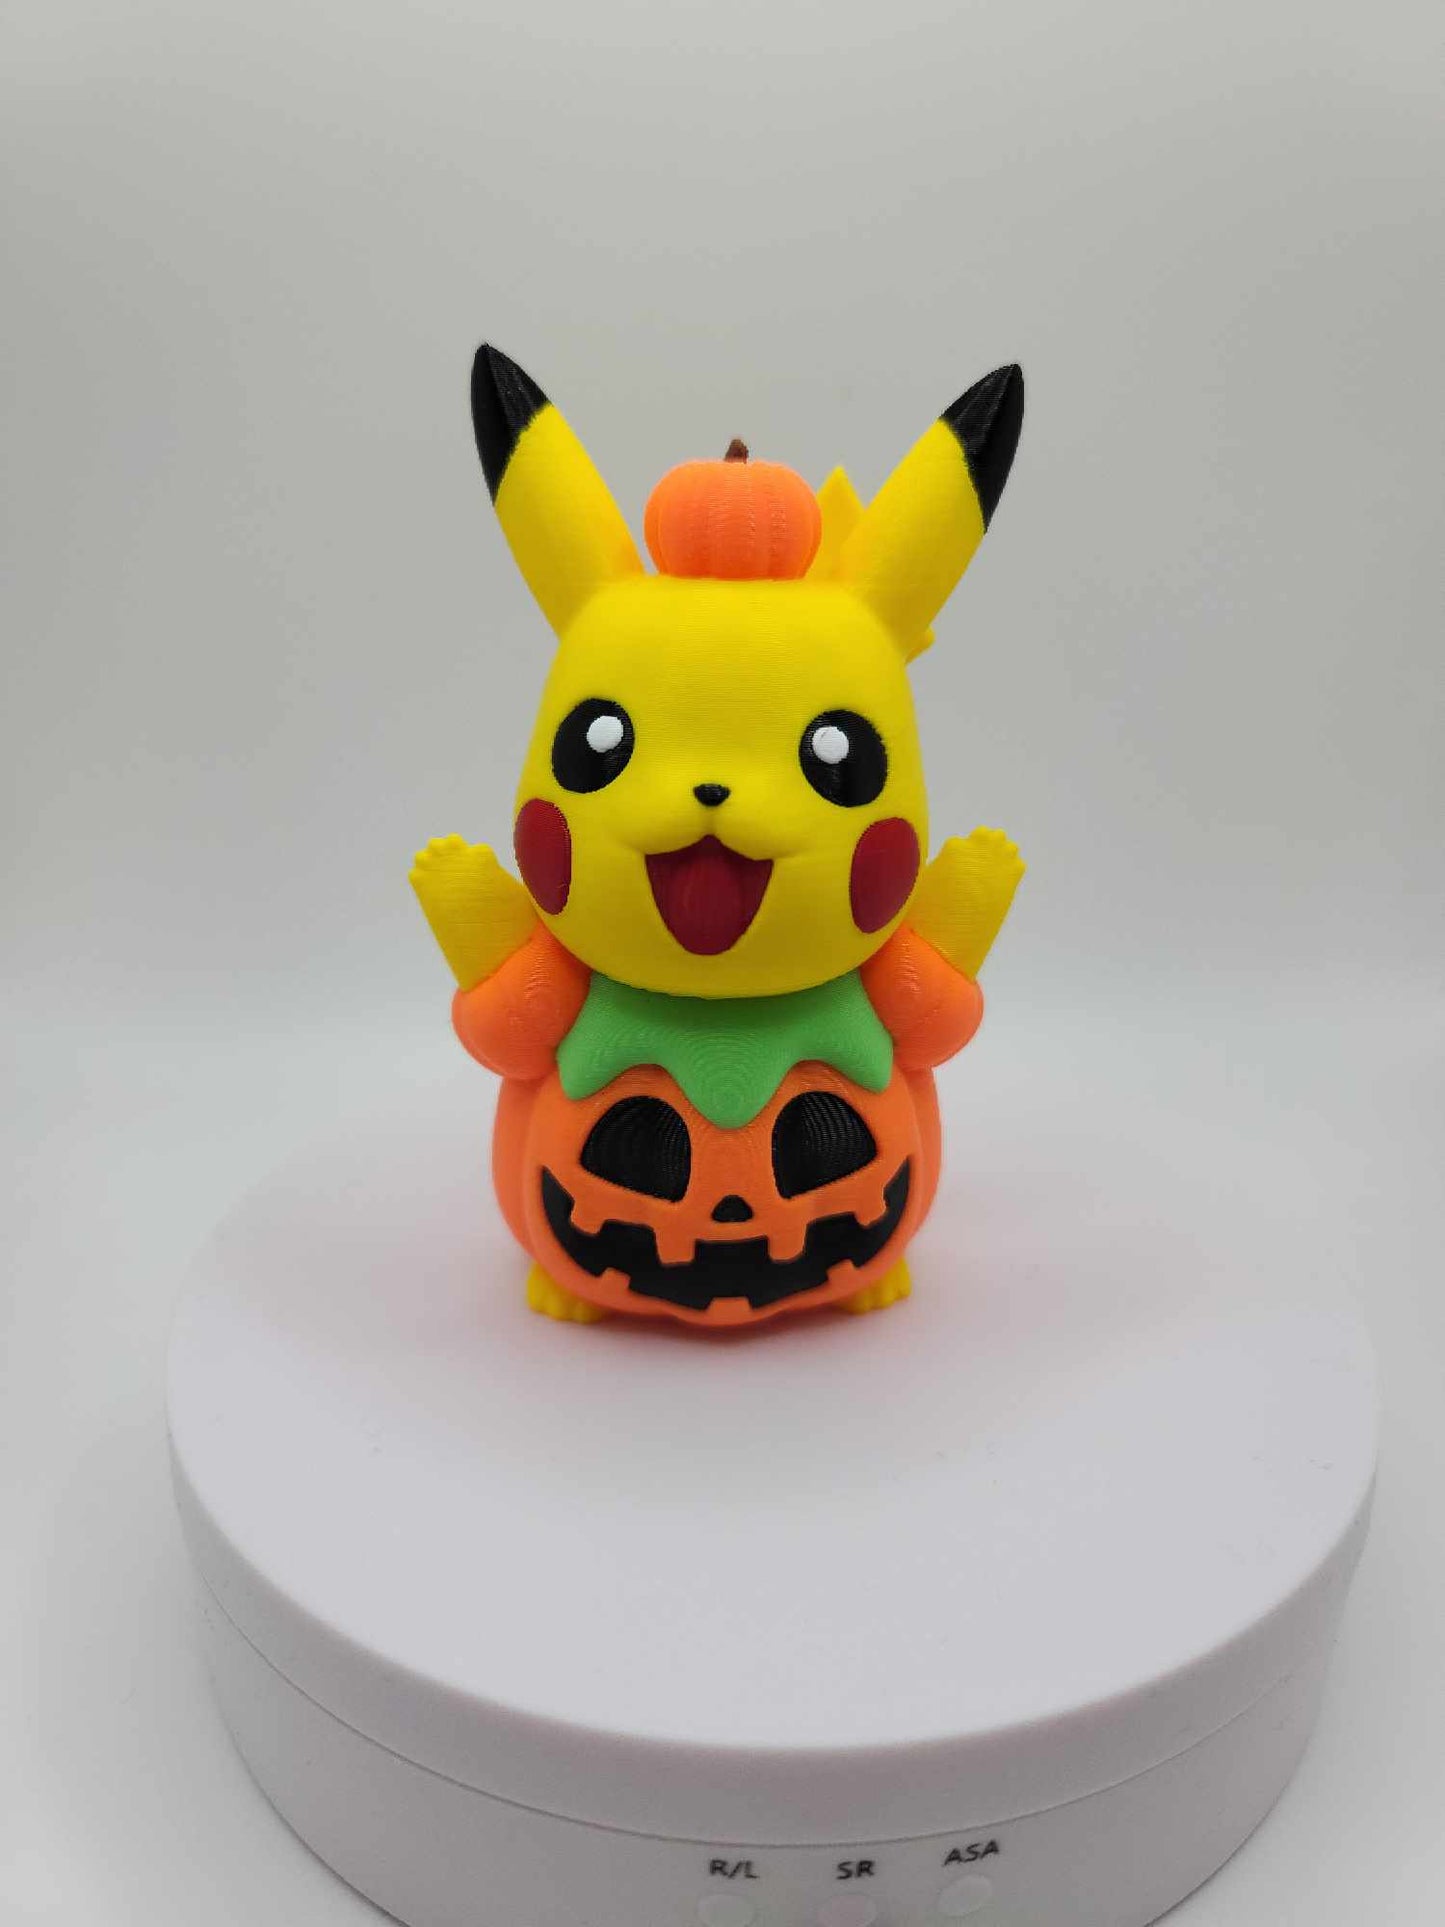 Halloween Style Pikachu